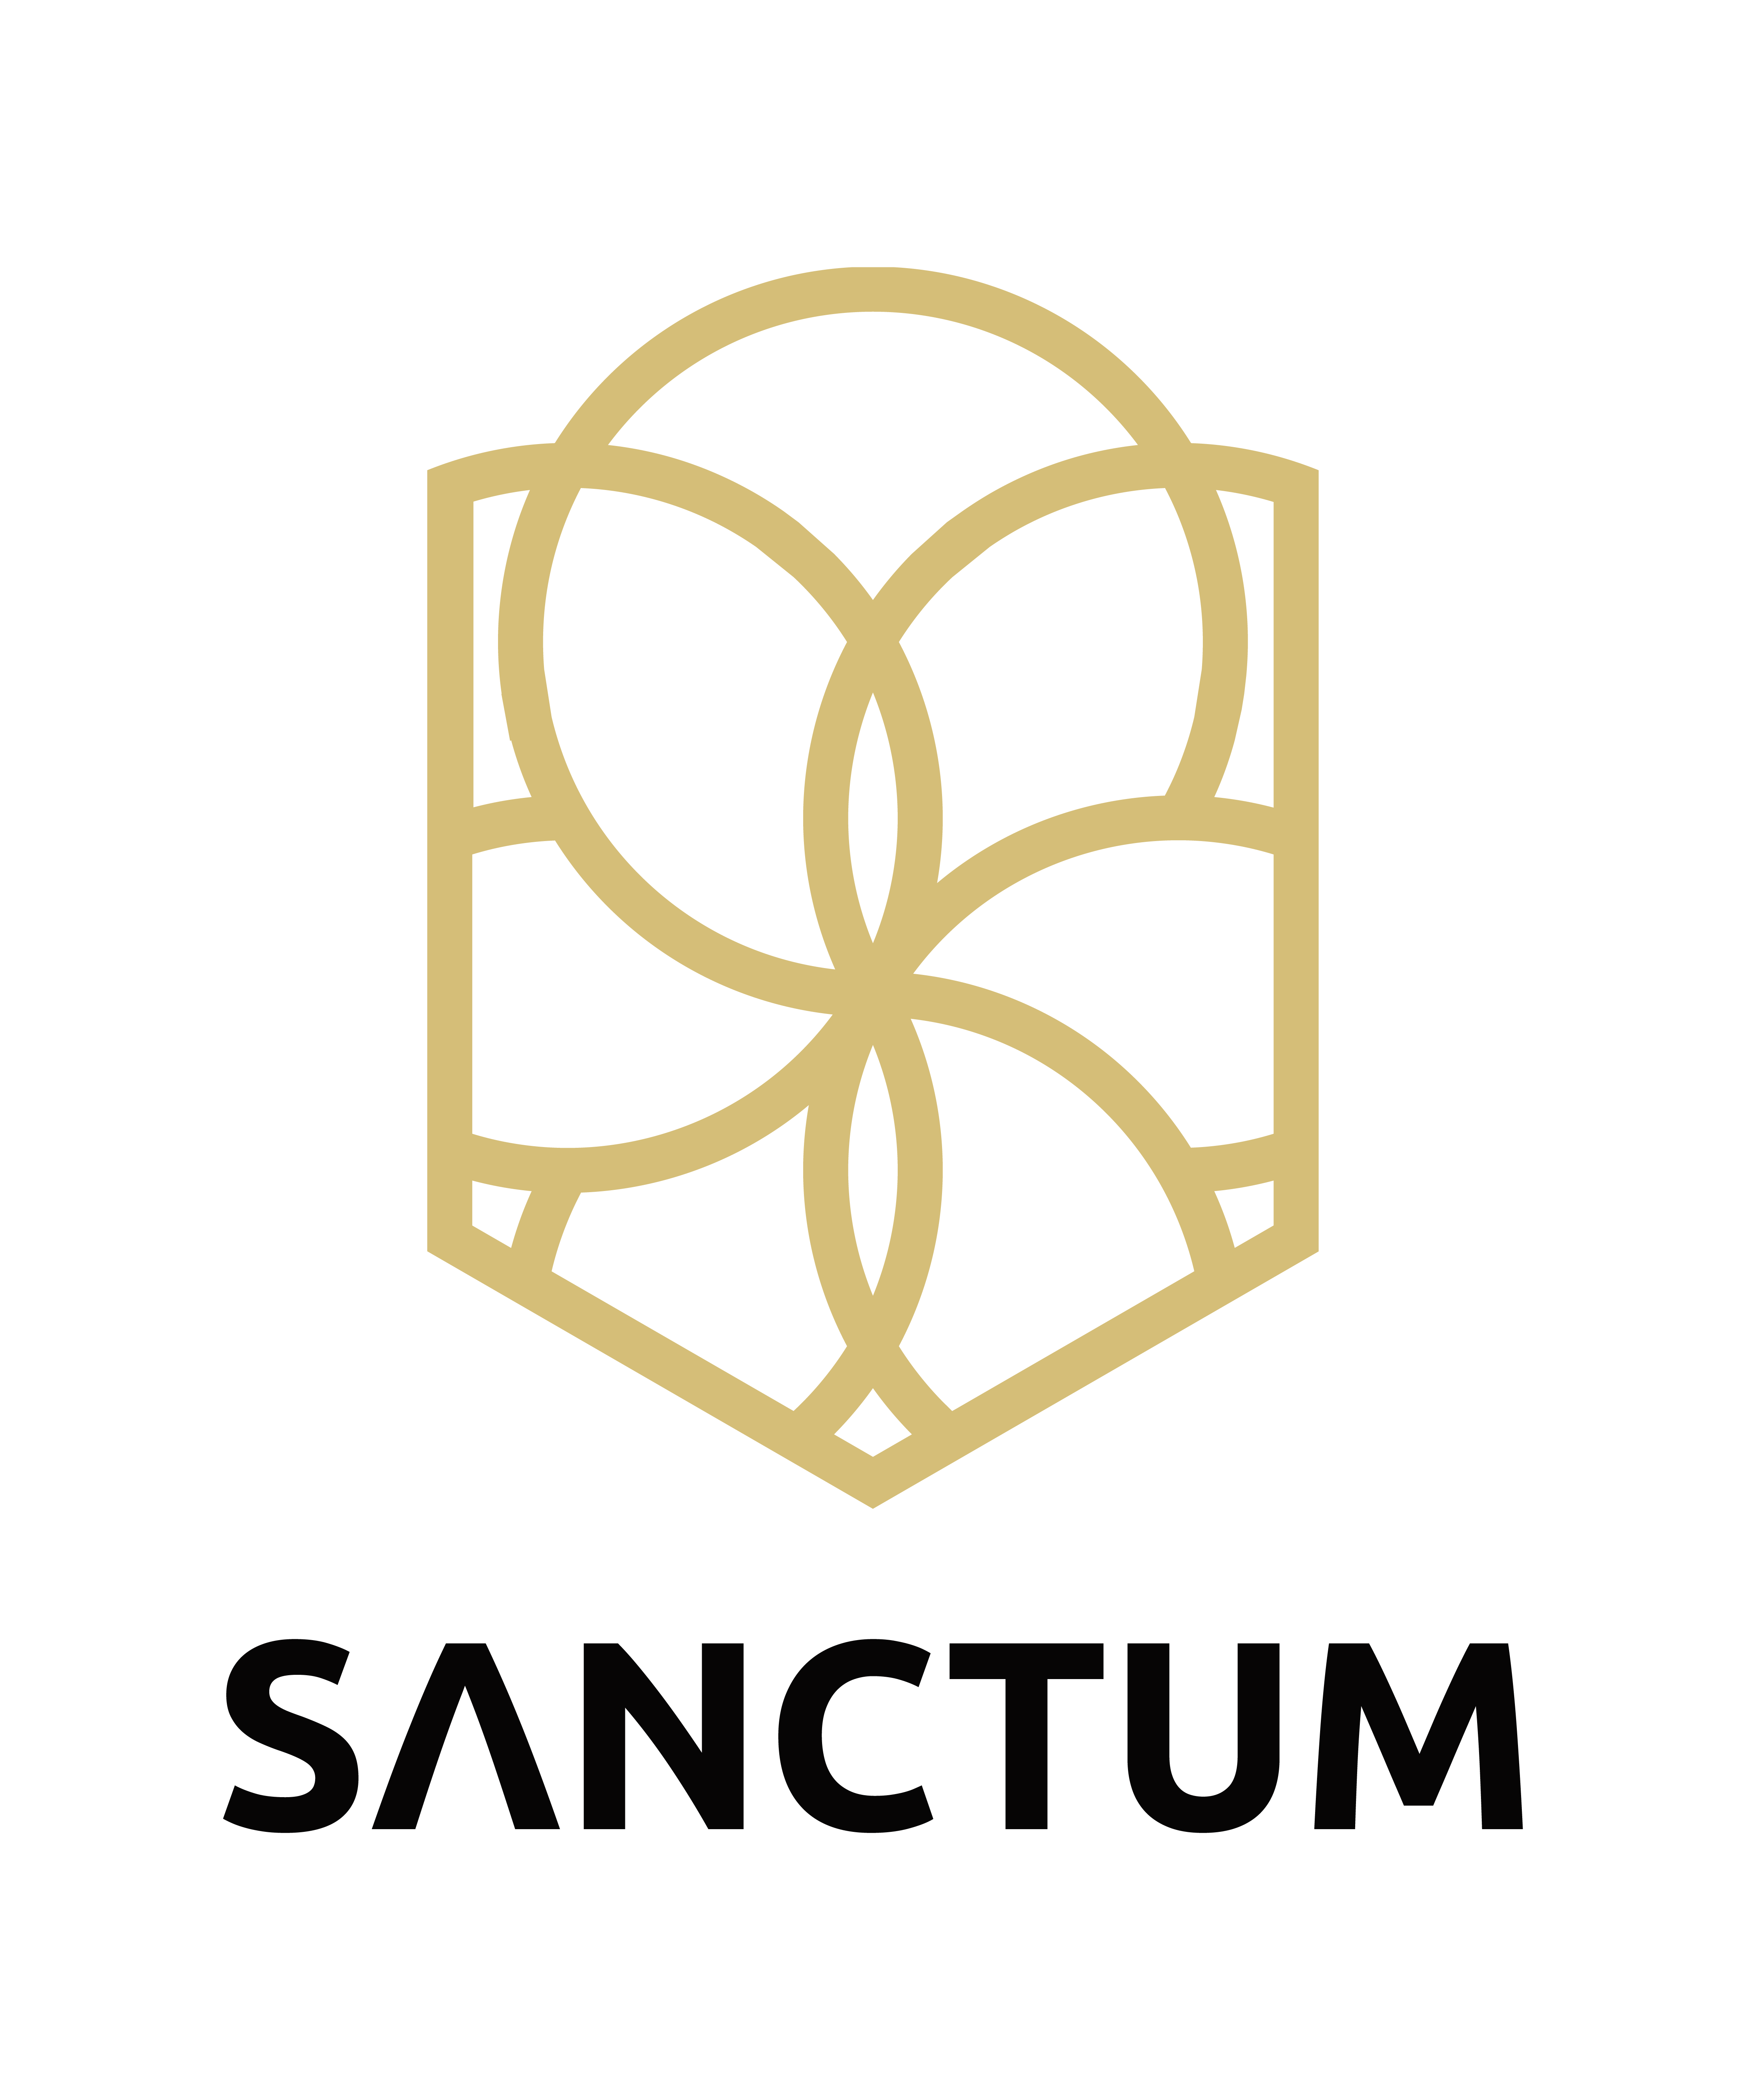 Sanctum - Gold